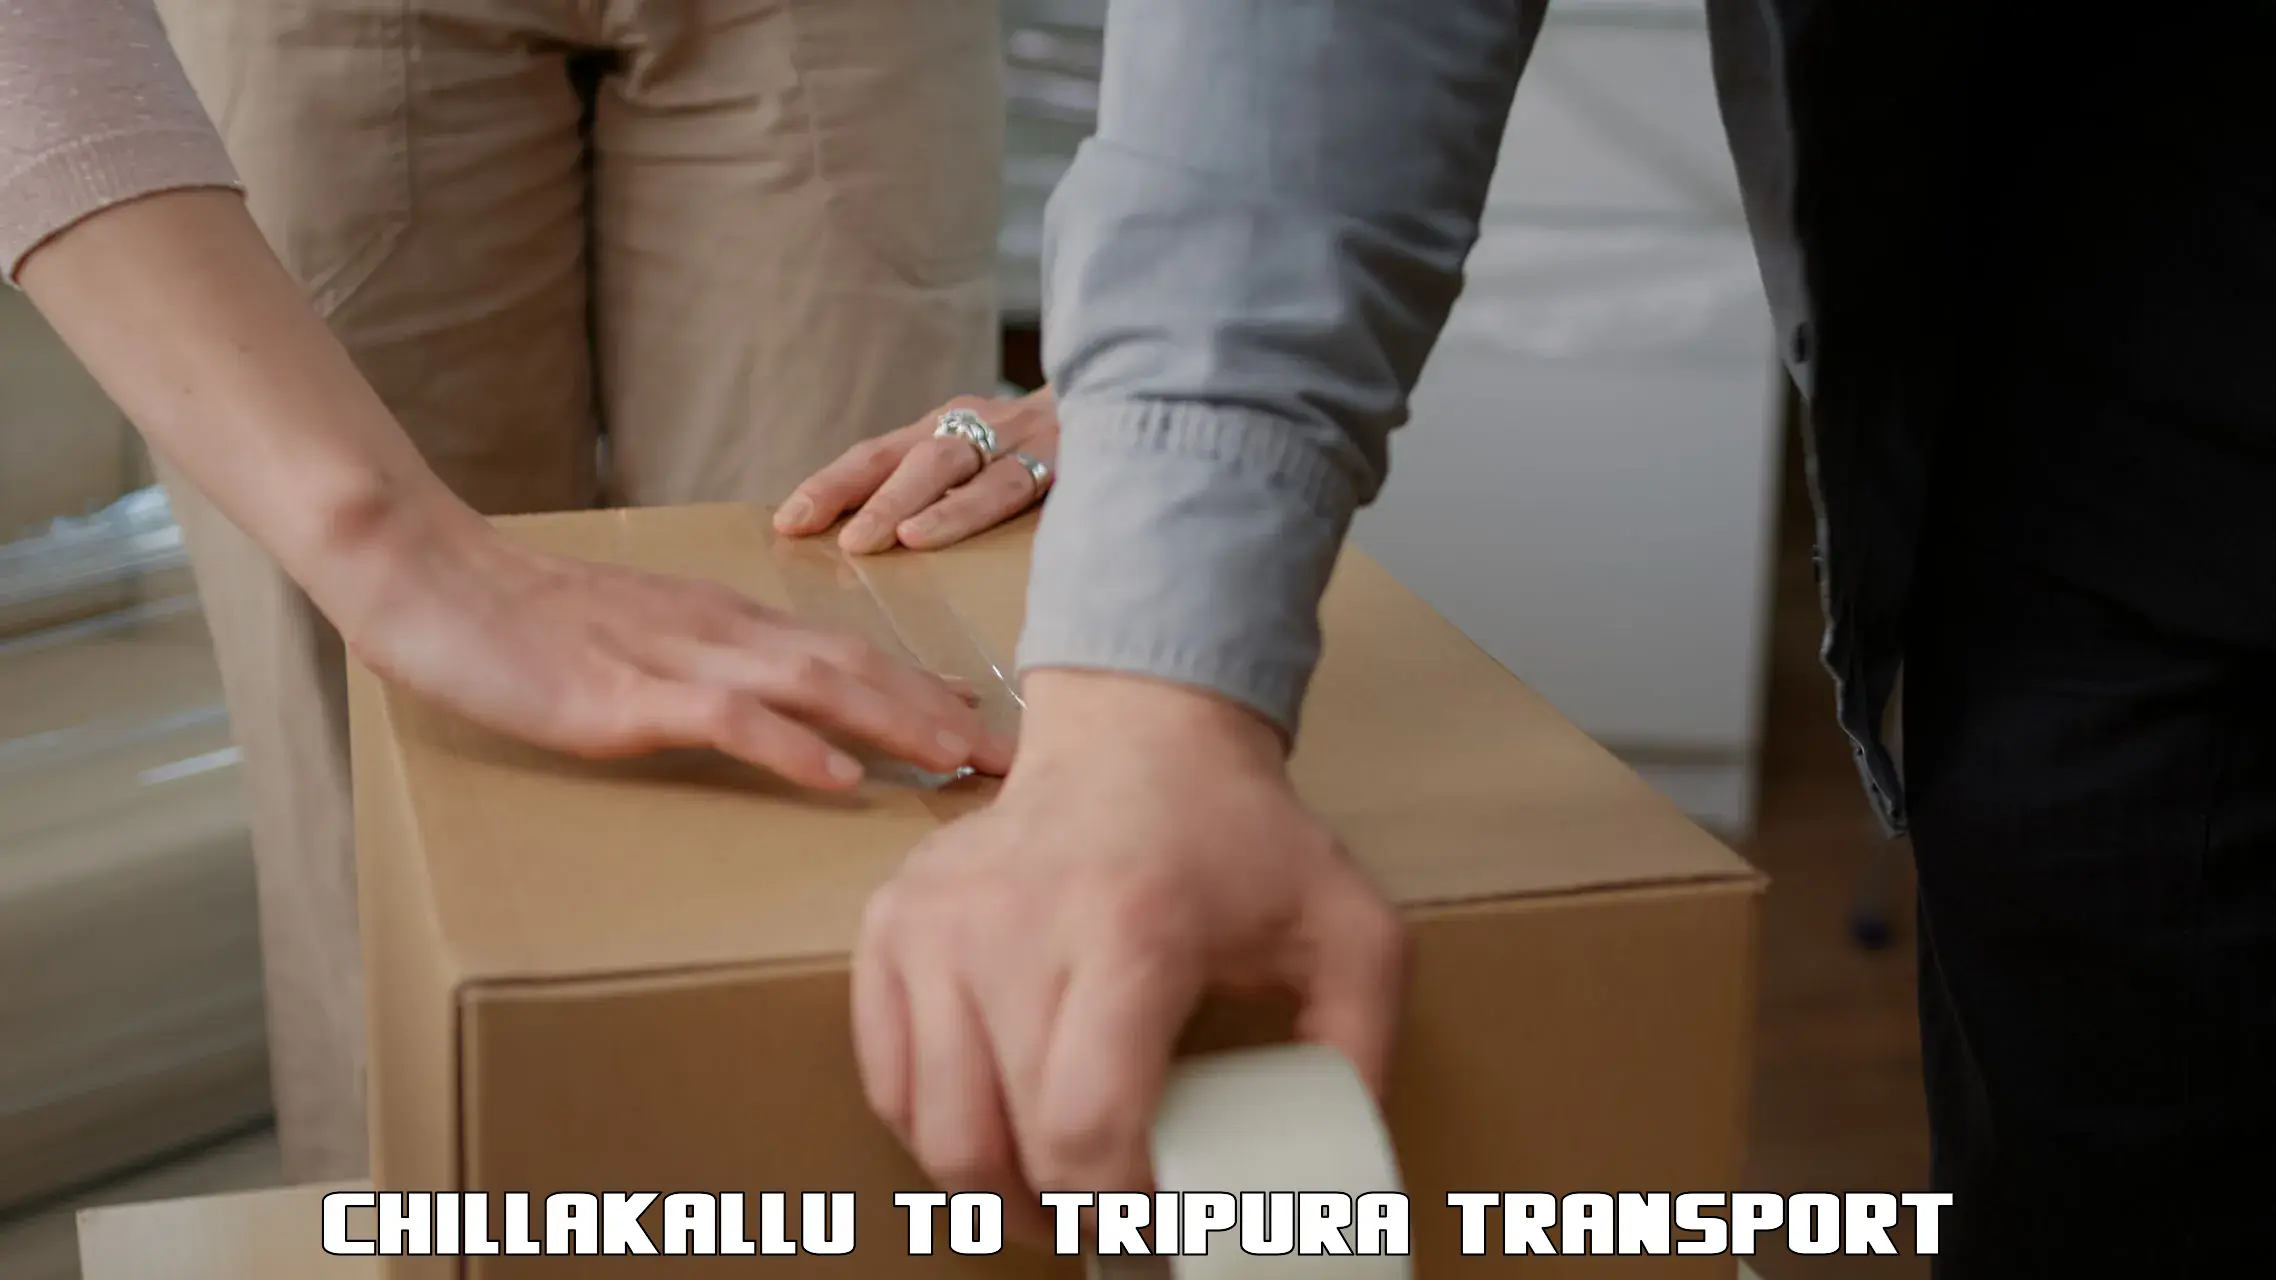 Container transport service Chillakallu to IIIT Agartala